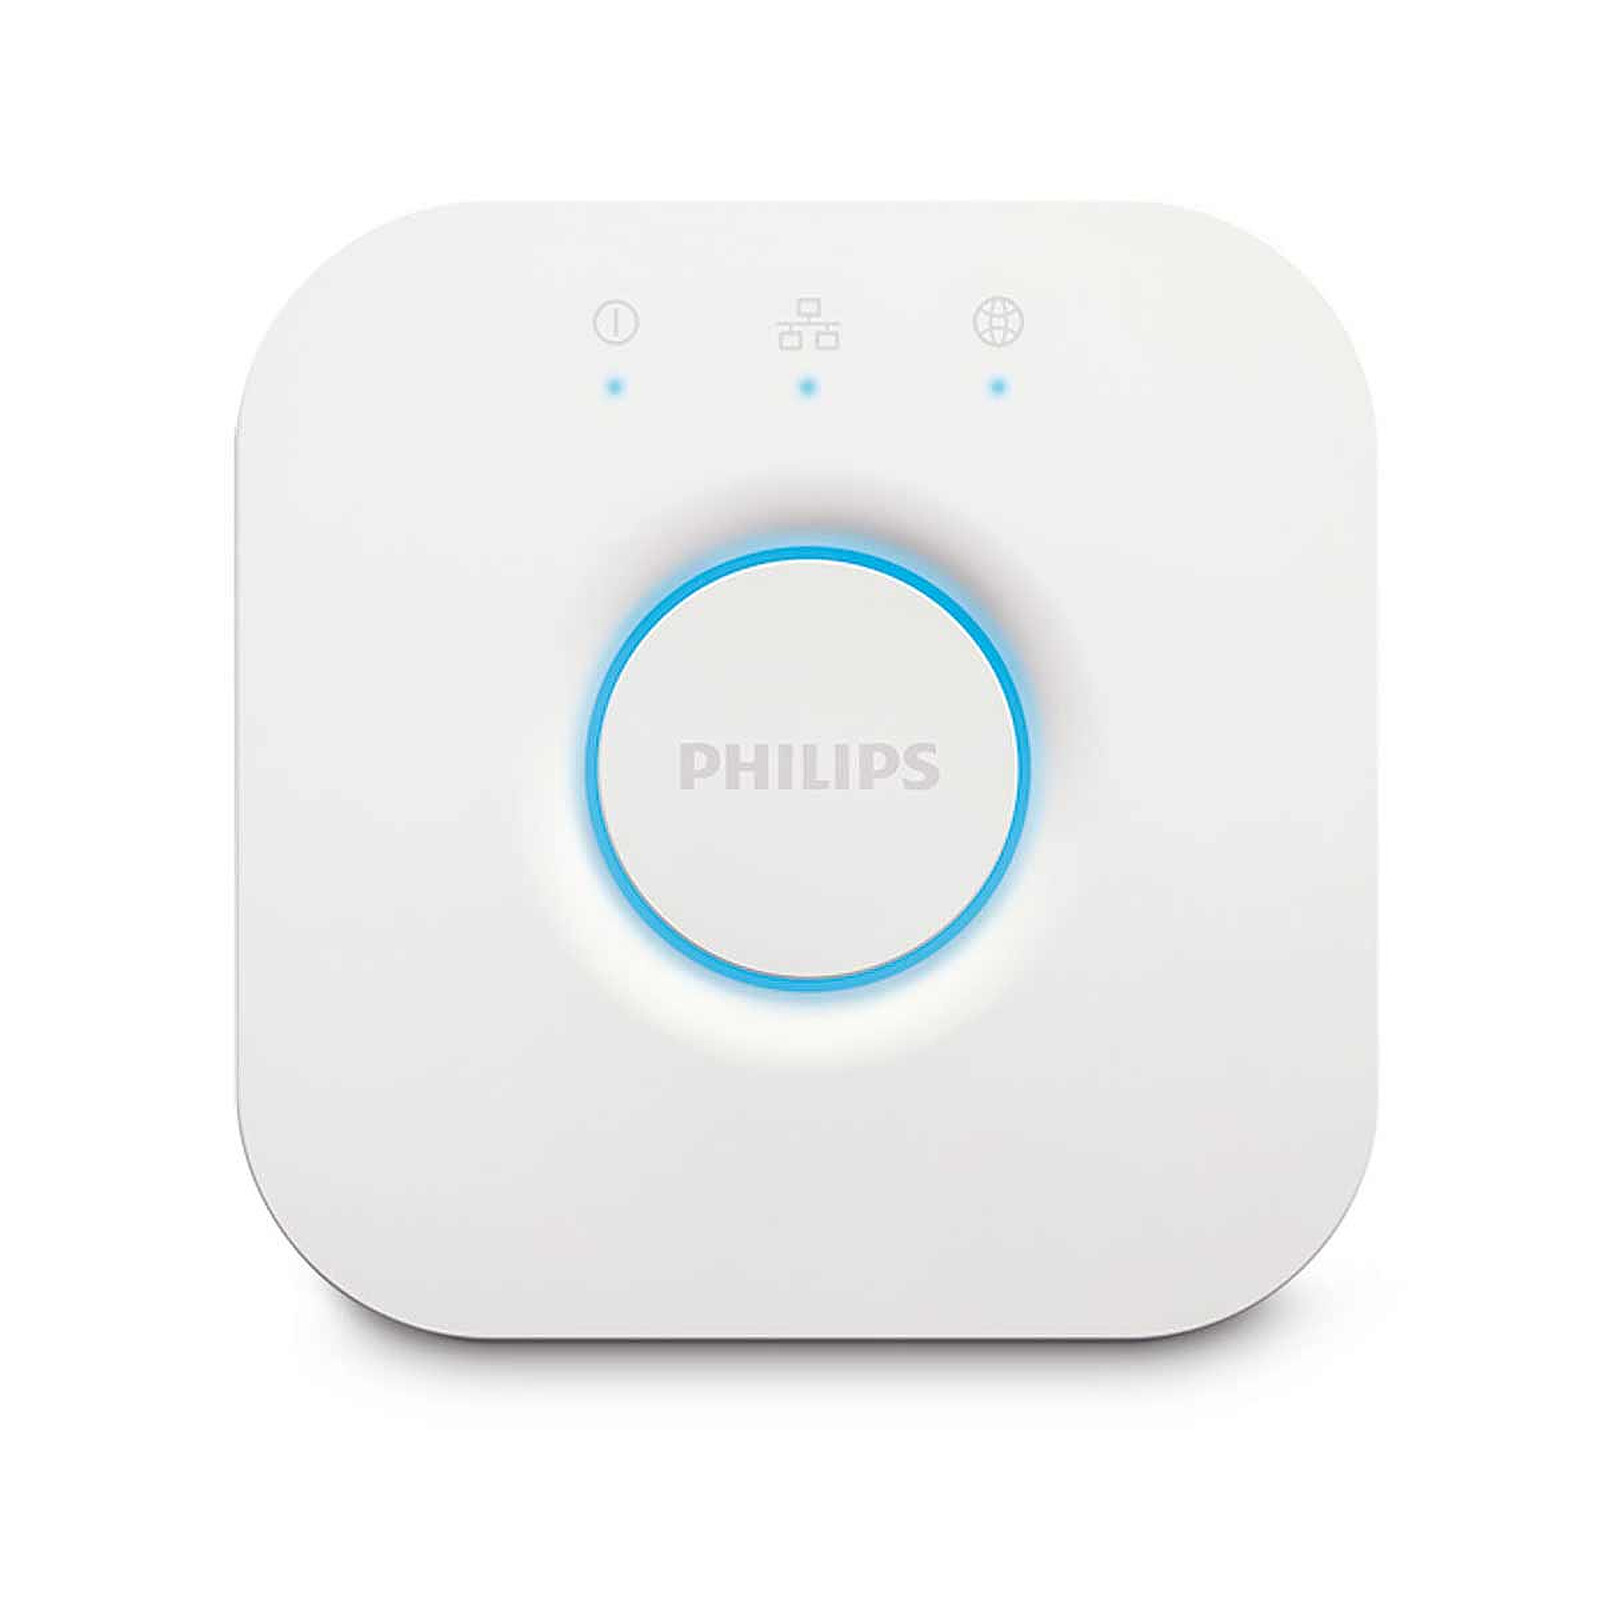 Philips Hue bouton télécommande Tap Dial Switch, blanc, permet le